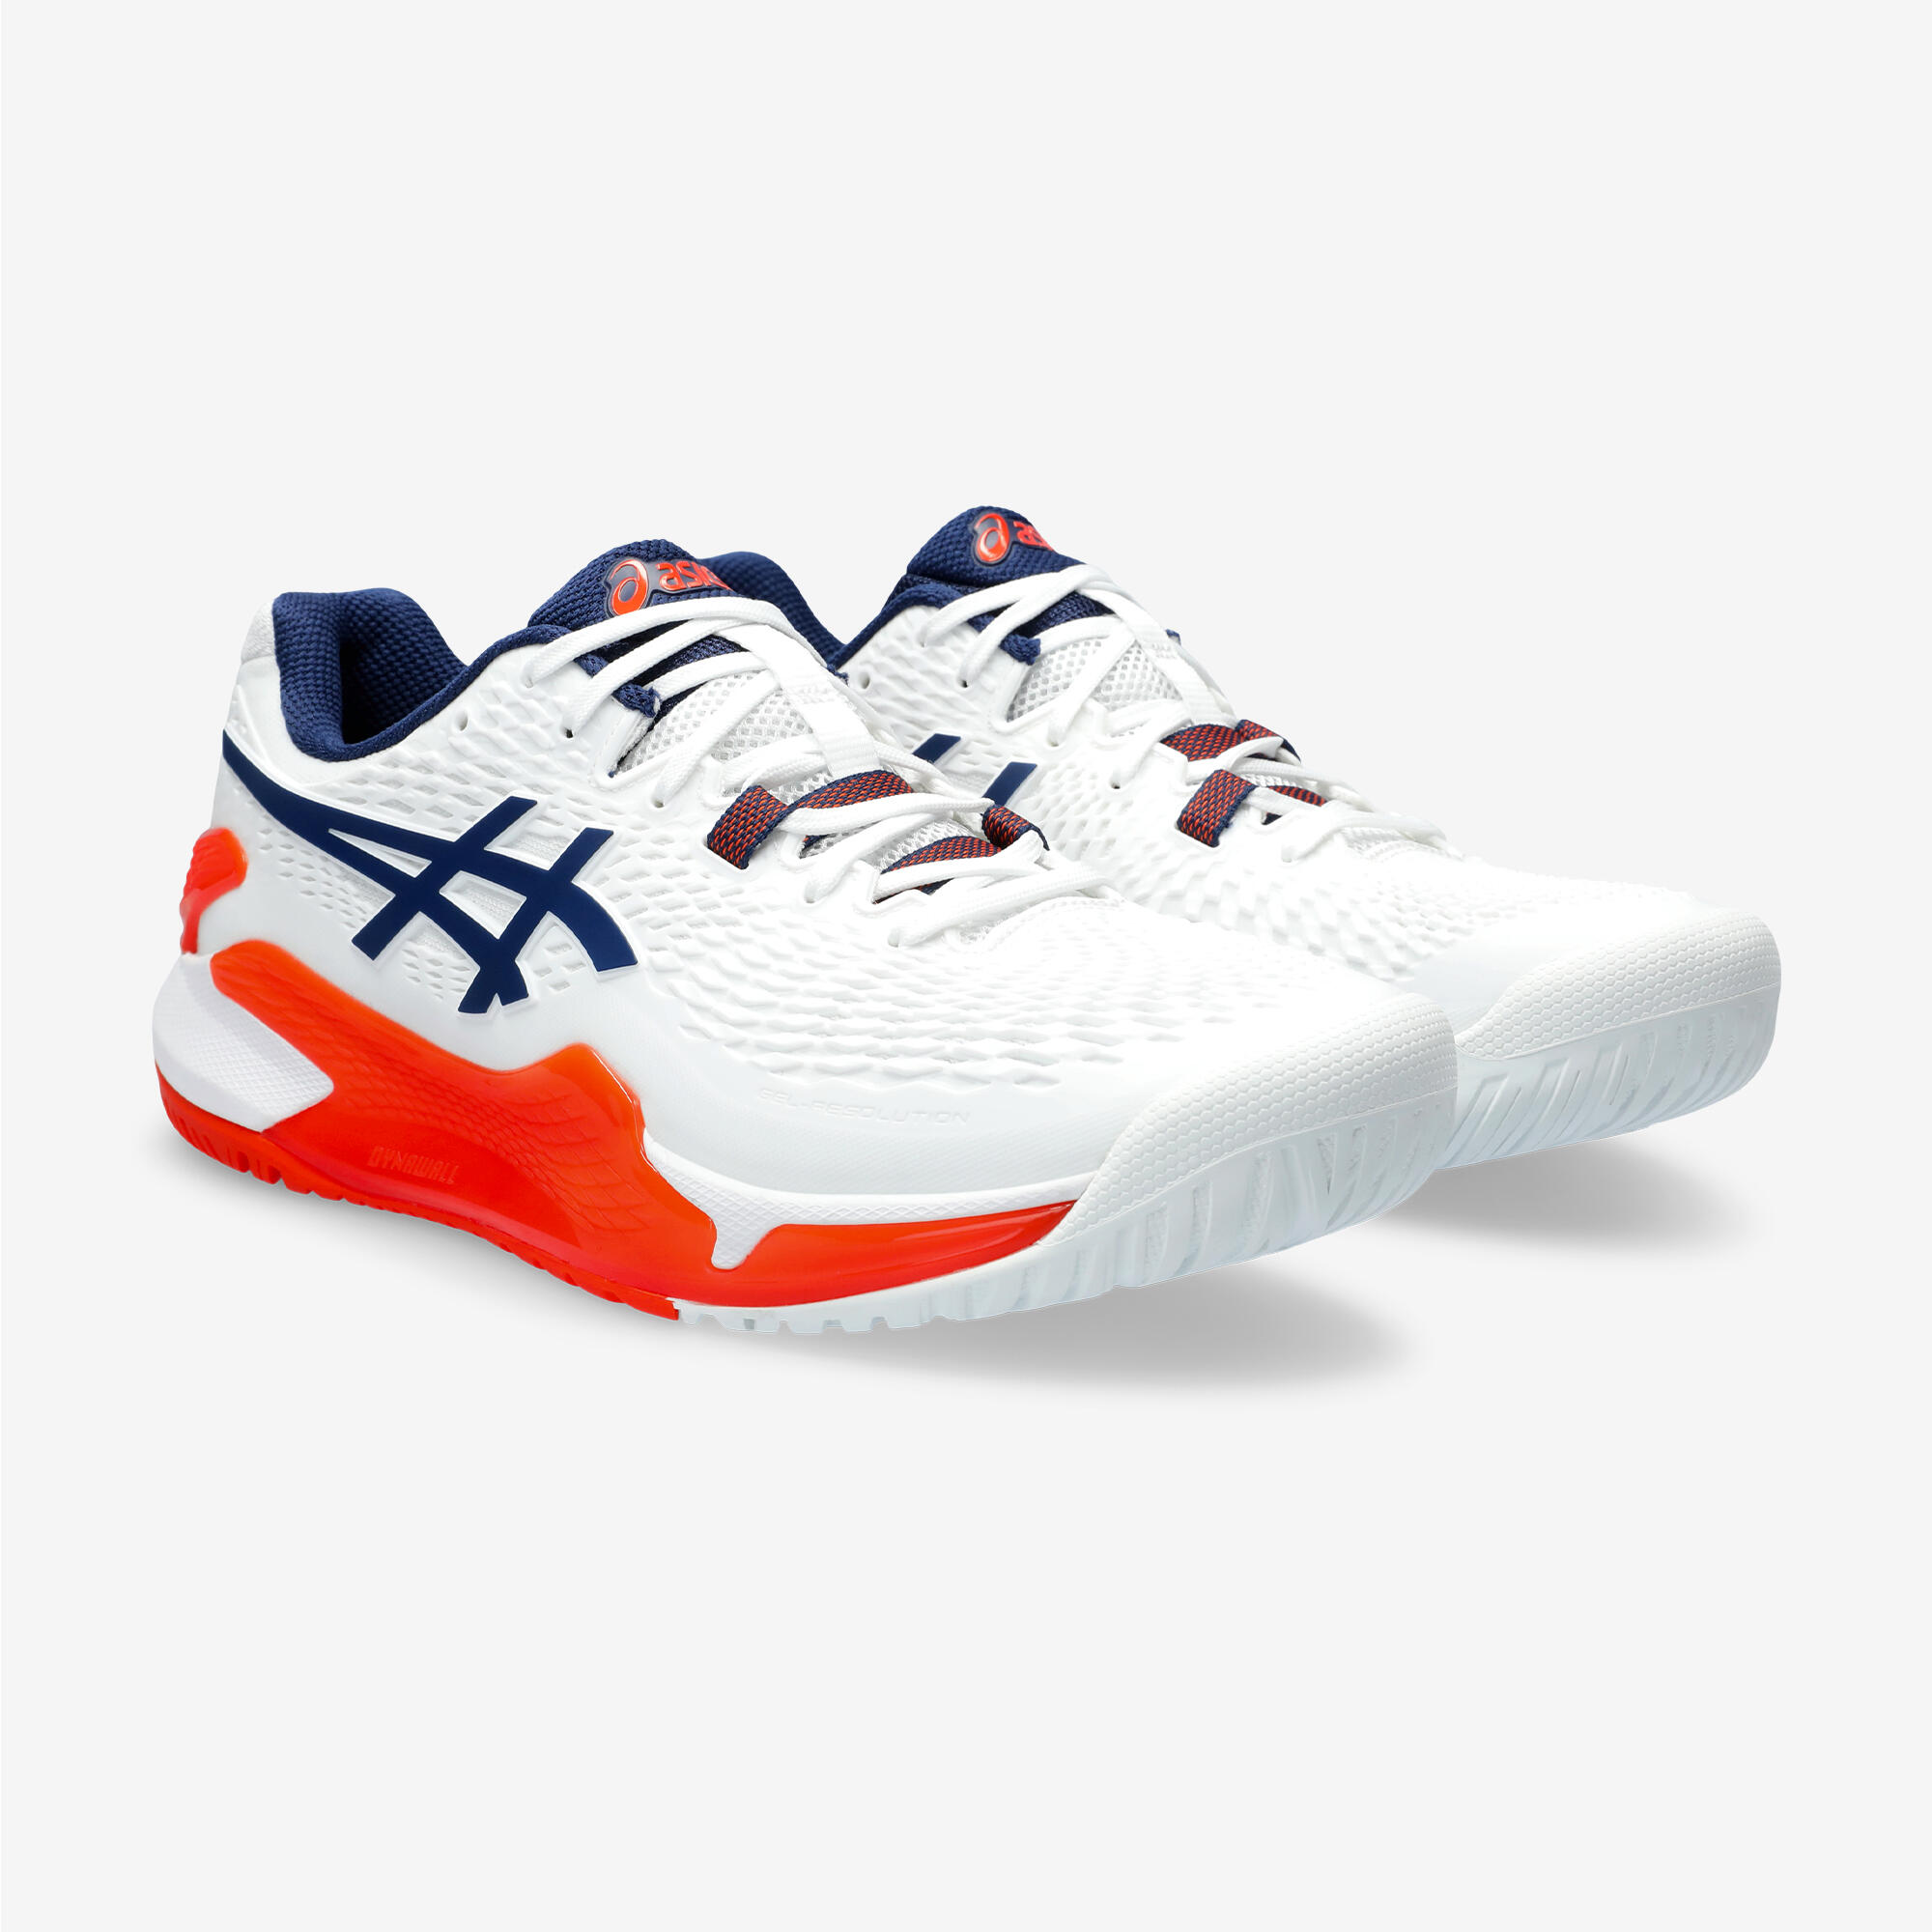 Men's Multicourt Tennis Shoes Gel Resolution 9 - White/Orange 4/7